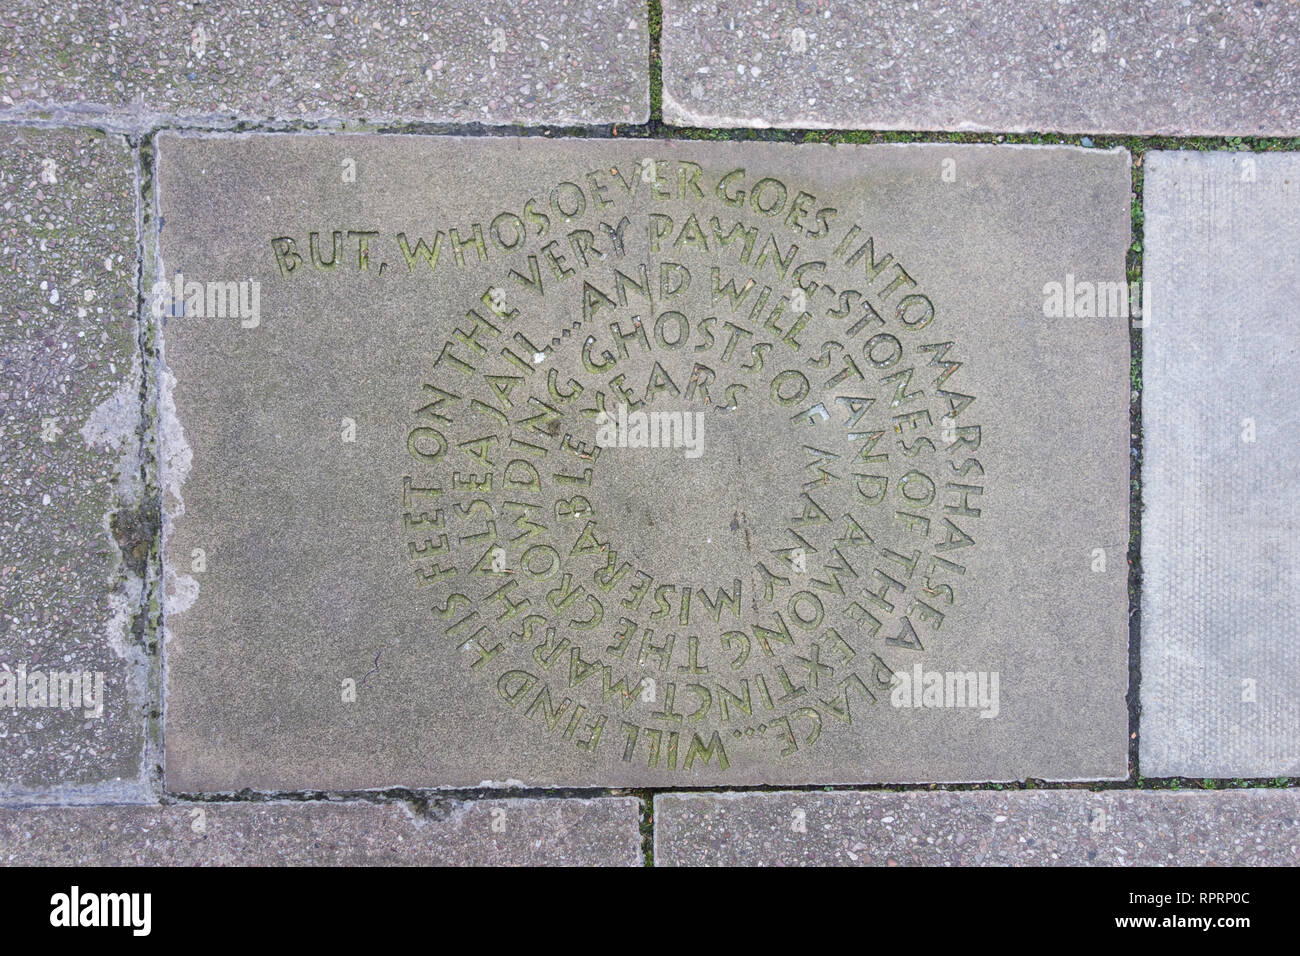 Charles Dickens' heroine, Little Dorrit, commemorated on a paving stone outside the former Marshalsea prison in Southwark, London, UK Stock Photo